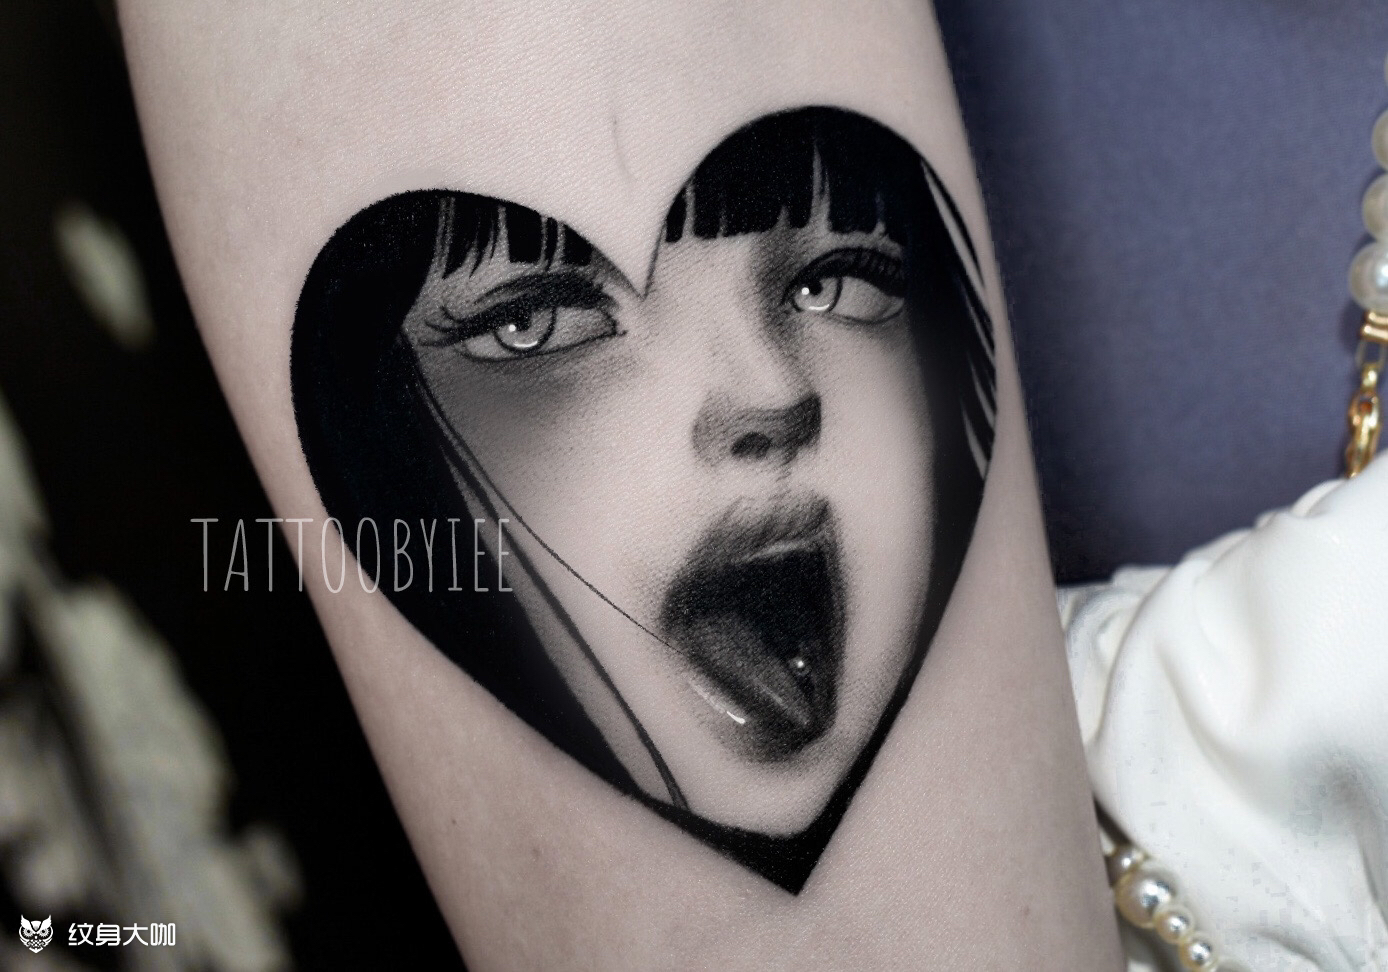 ArtStation - Tattoos girl